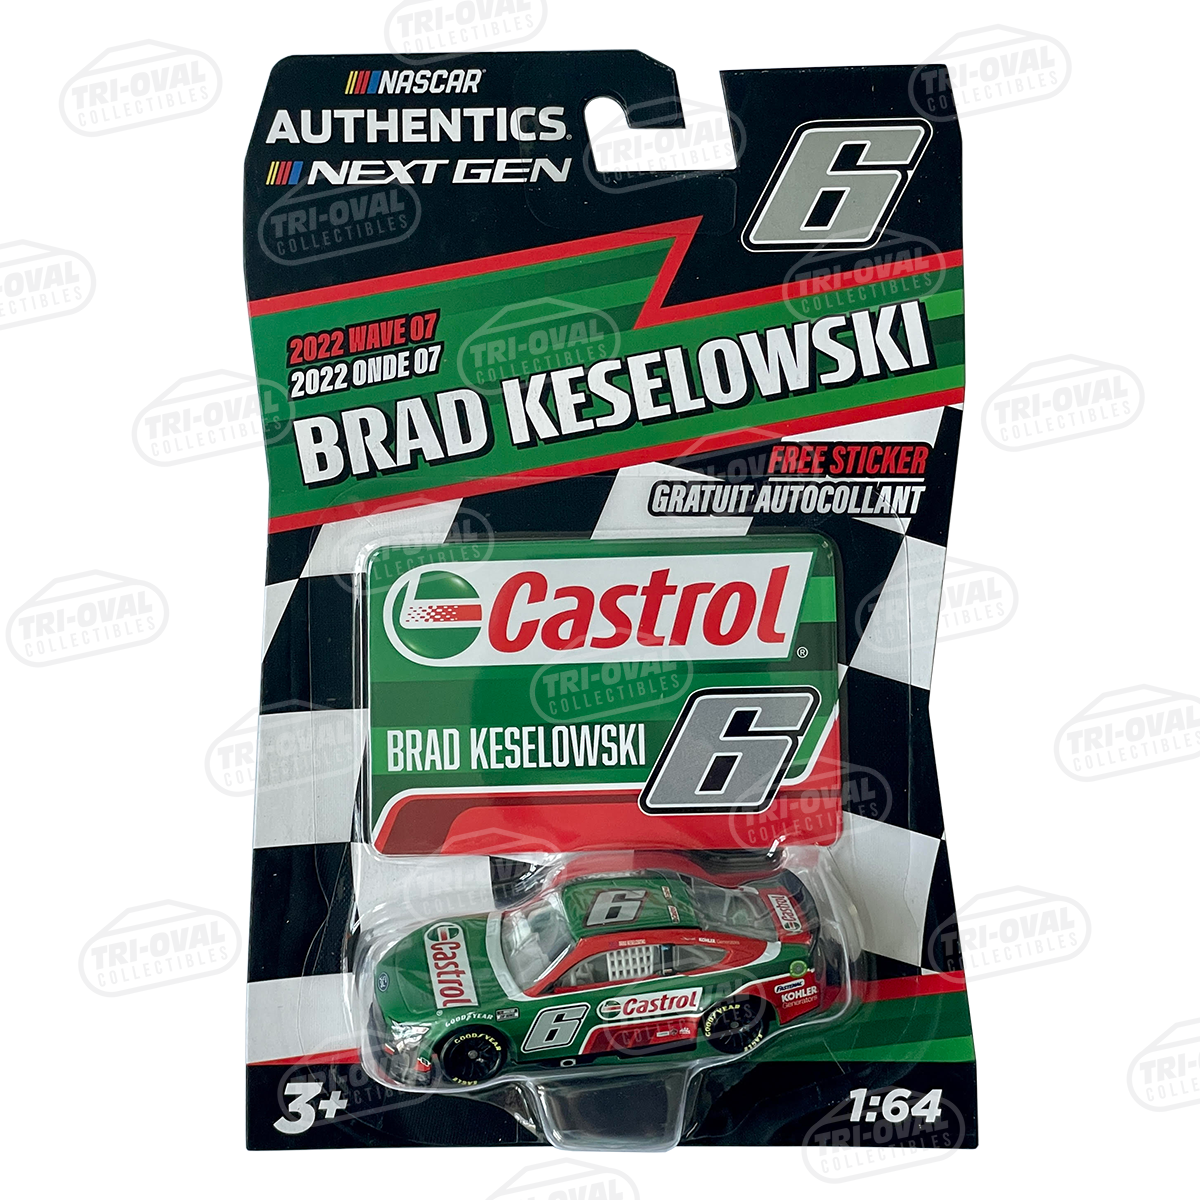 Brad Keselowski Castrol 2022 Wave 7 NASCAR Authentics